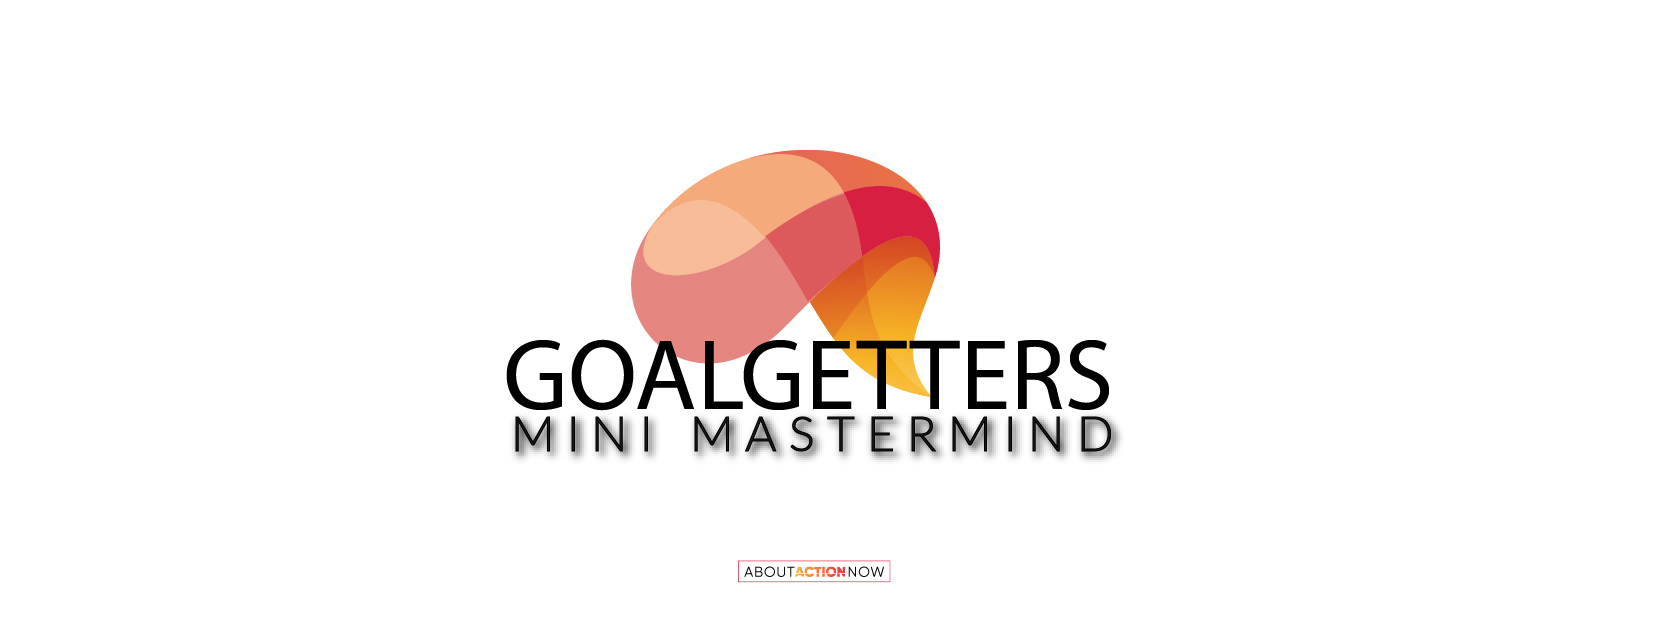 Goalgetters mini mastermind